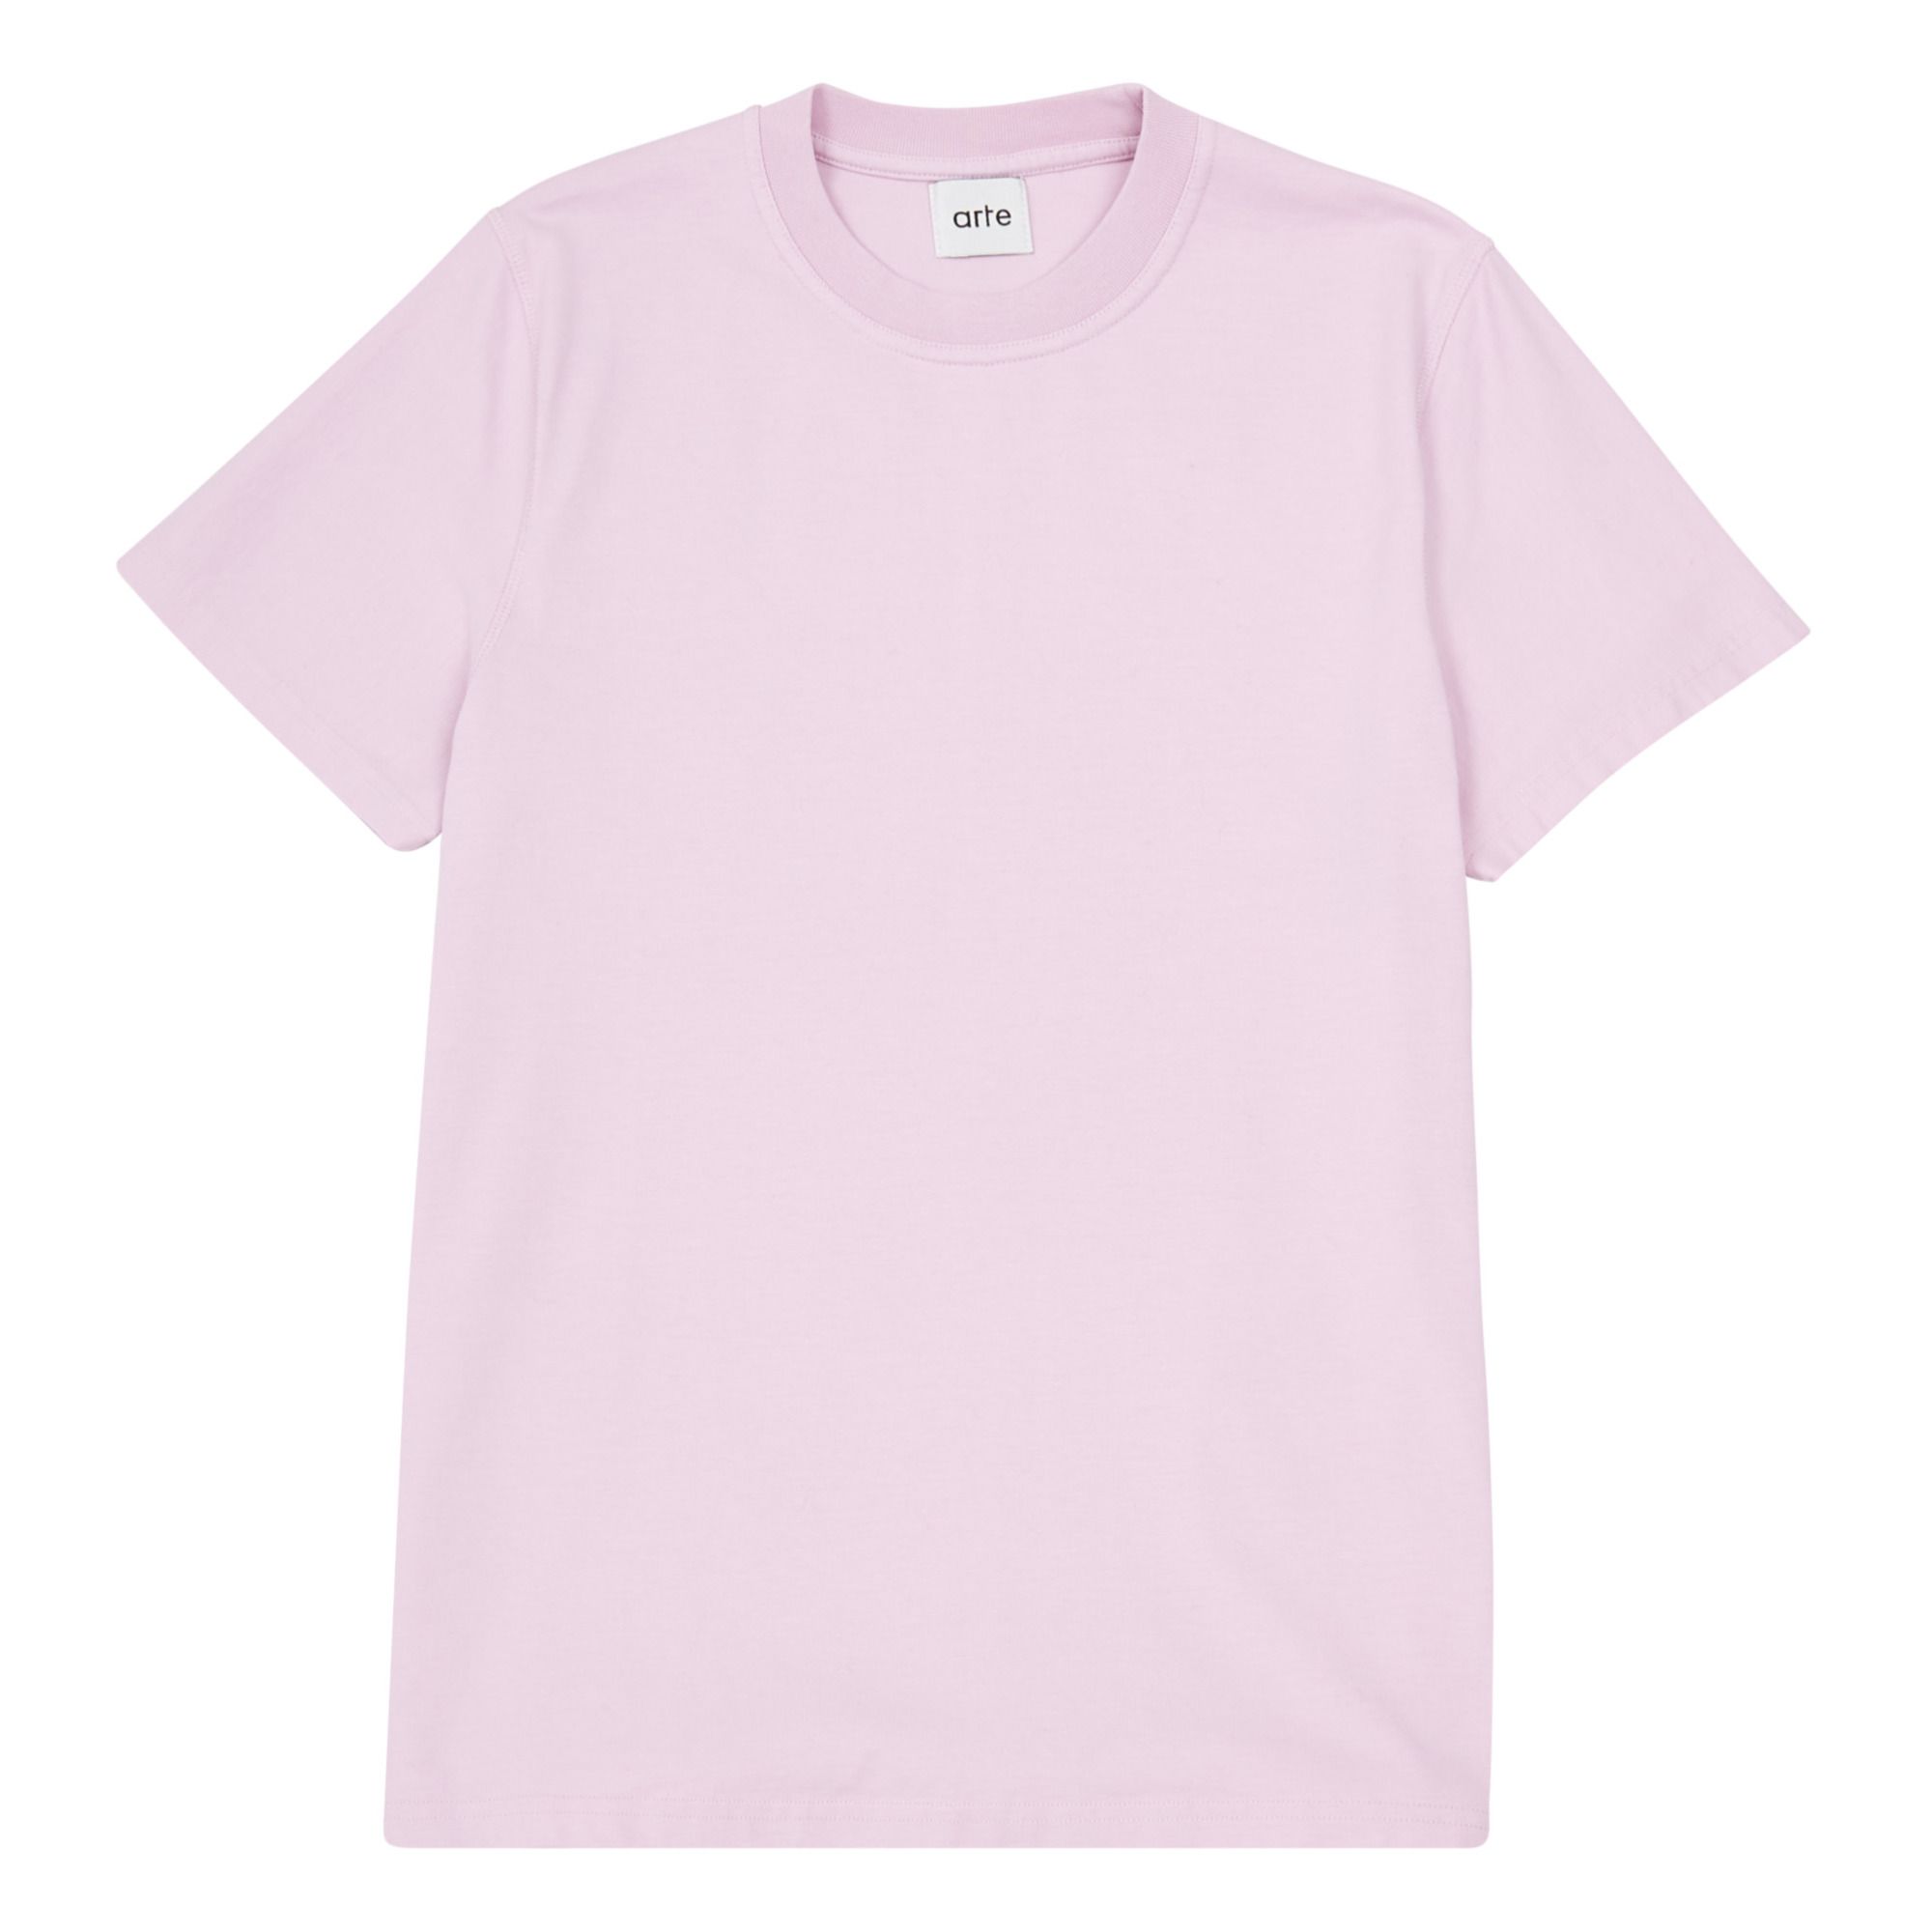 T-Shirt A - Erwachsenen Kollektion - Rosa- Produktbild Nr. 1